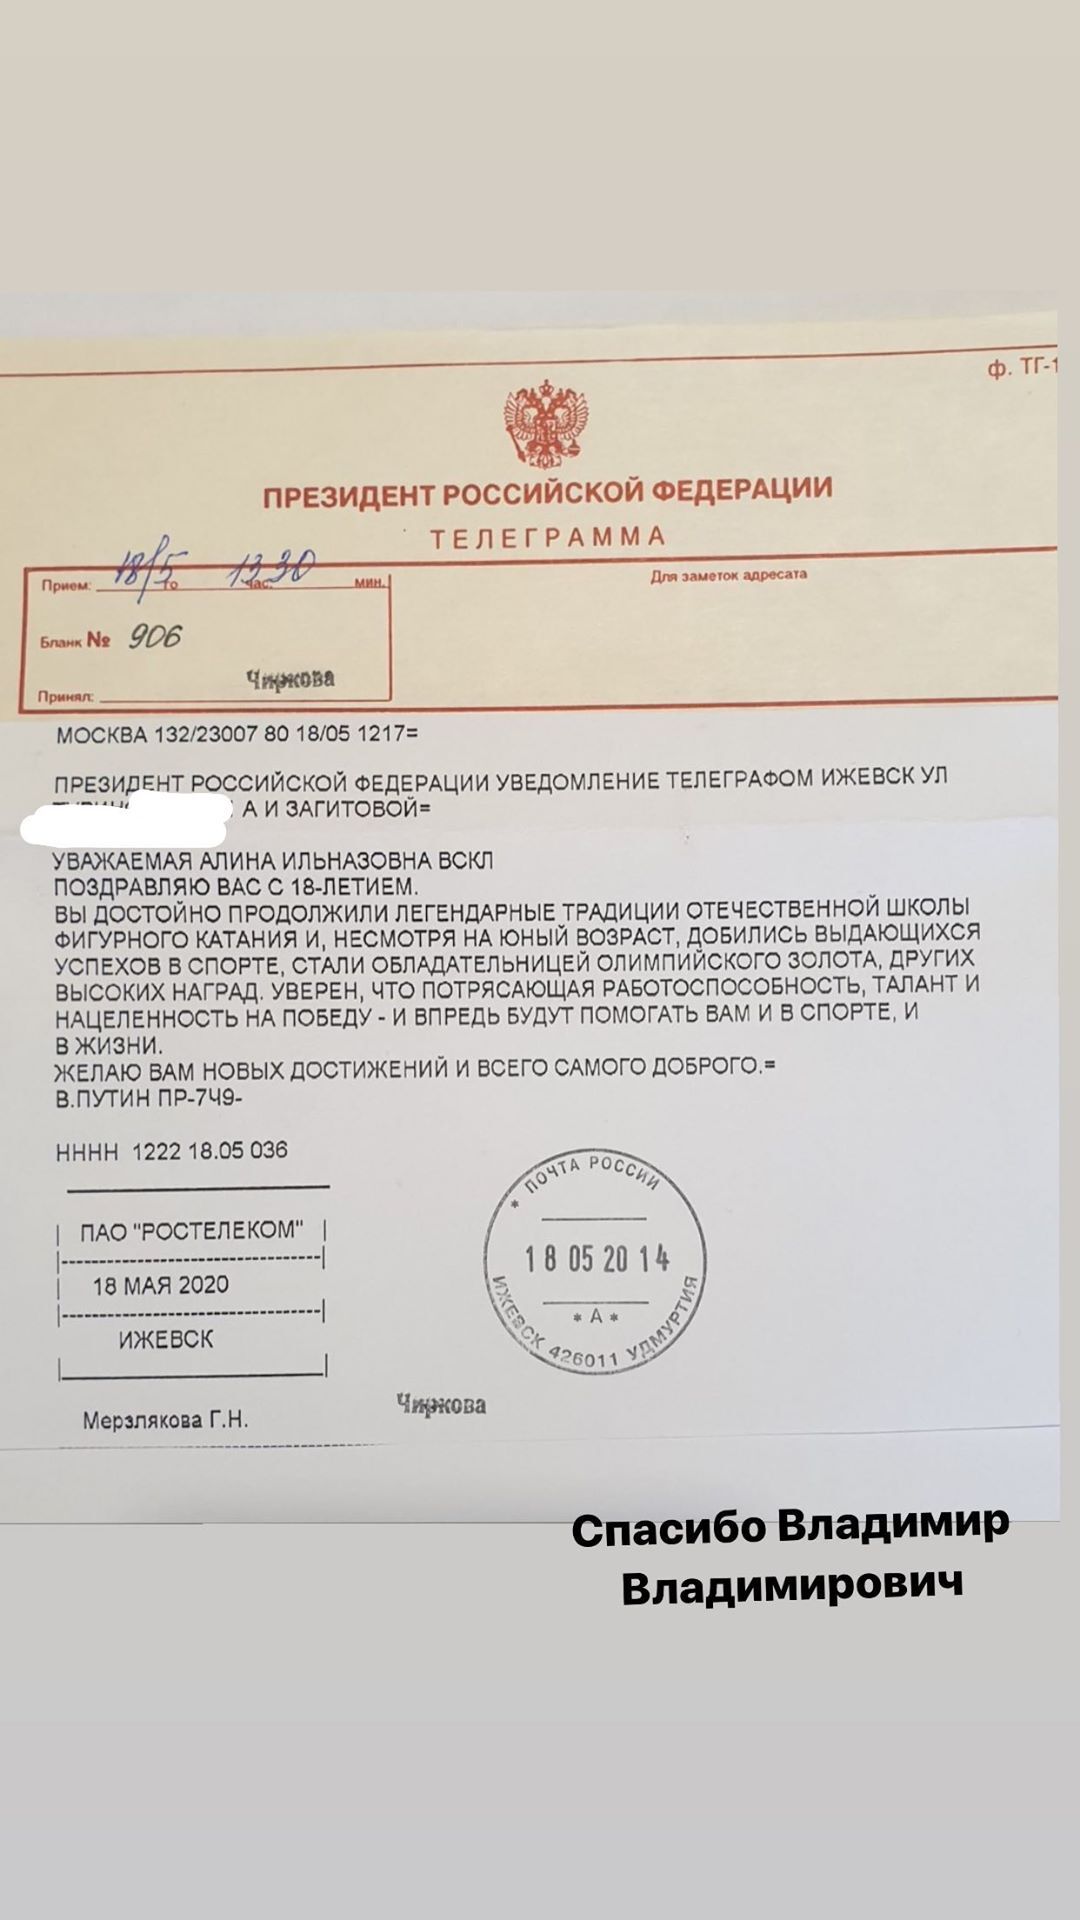 Олимпийская чемпионка Алина Загитова, с которой нарушил закон Путин, показала телеграмму от него